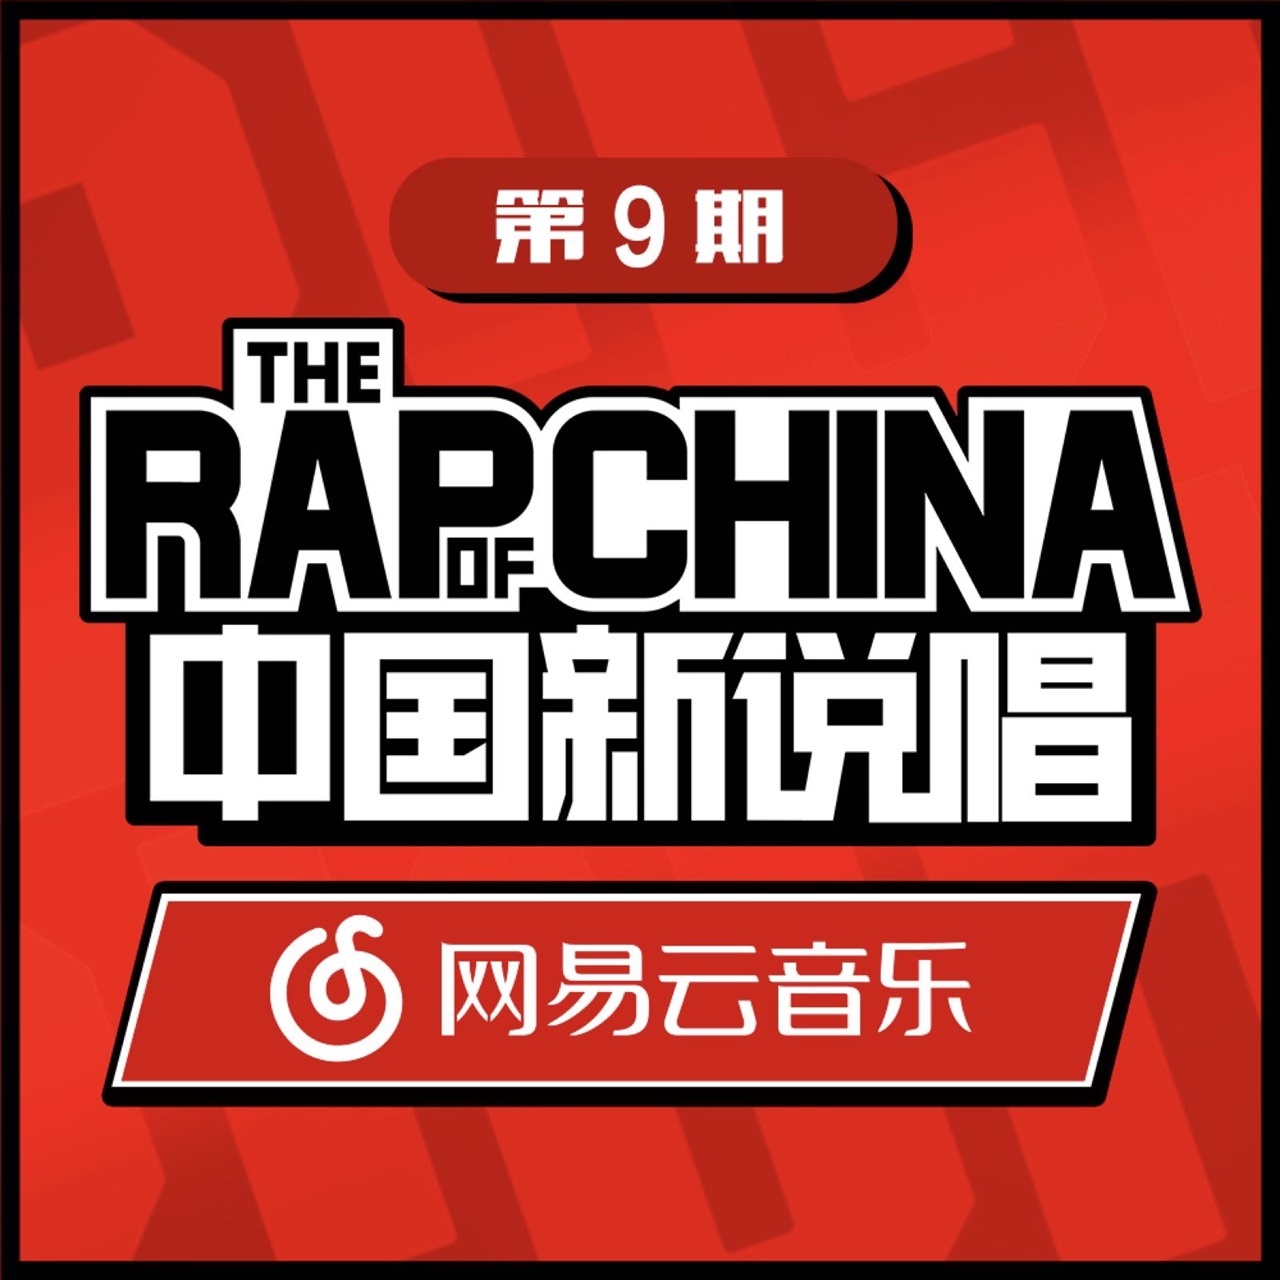 zhong guo xin shuo chang EP09 RAP01 Live